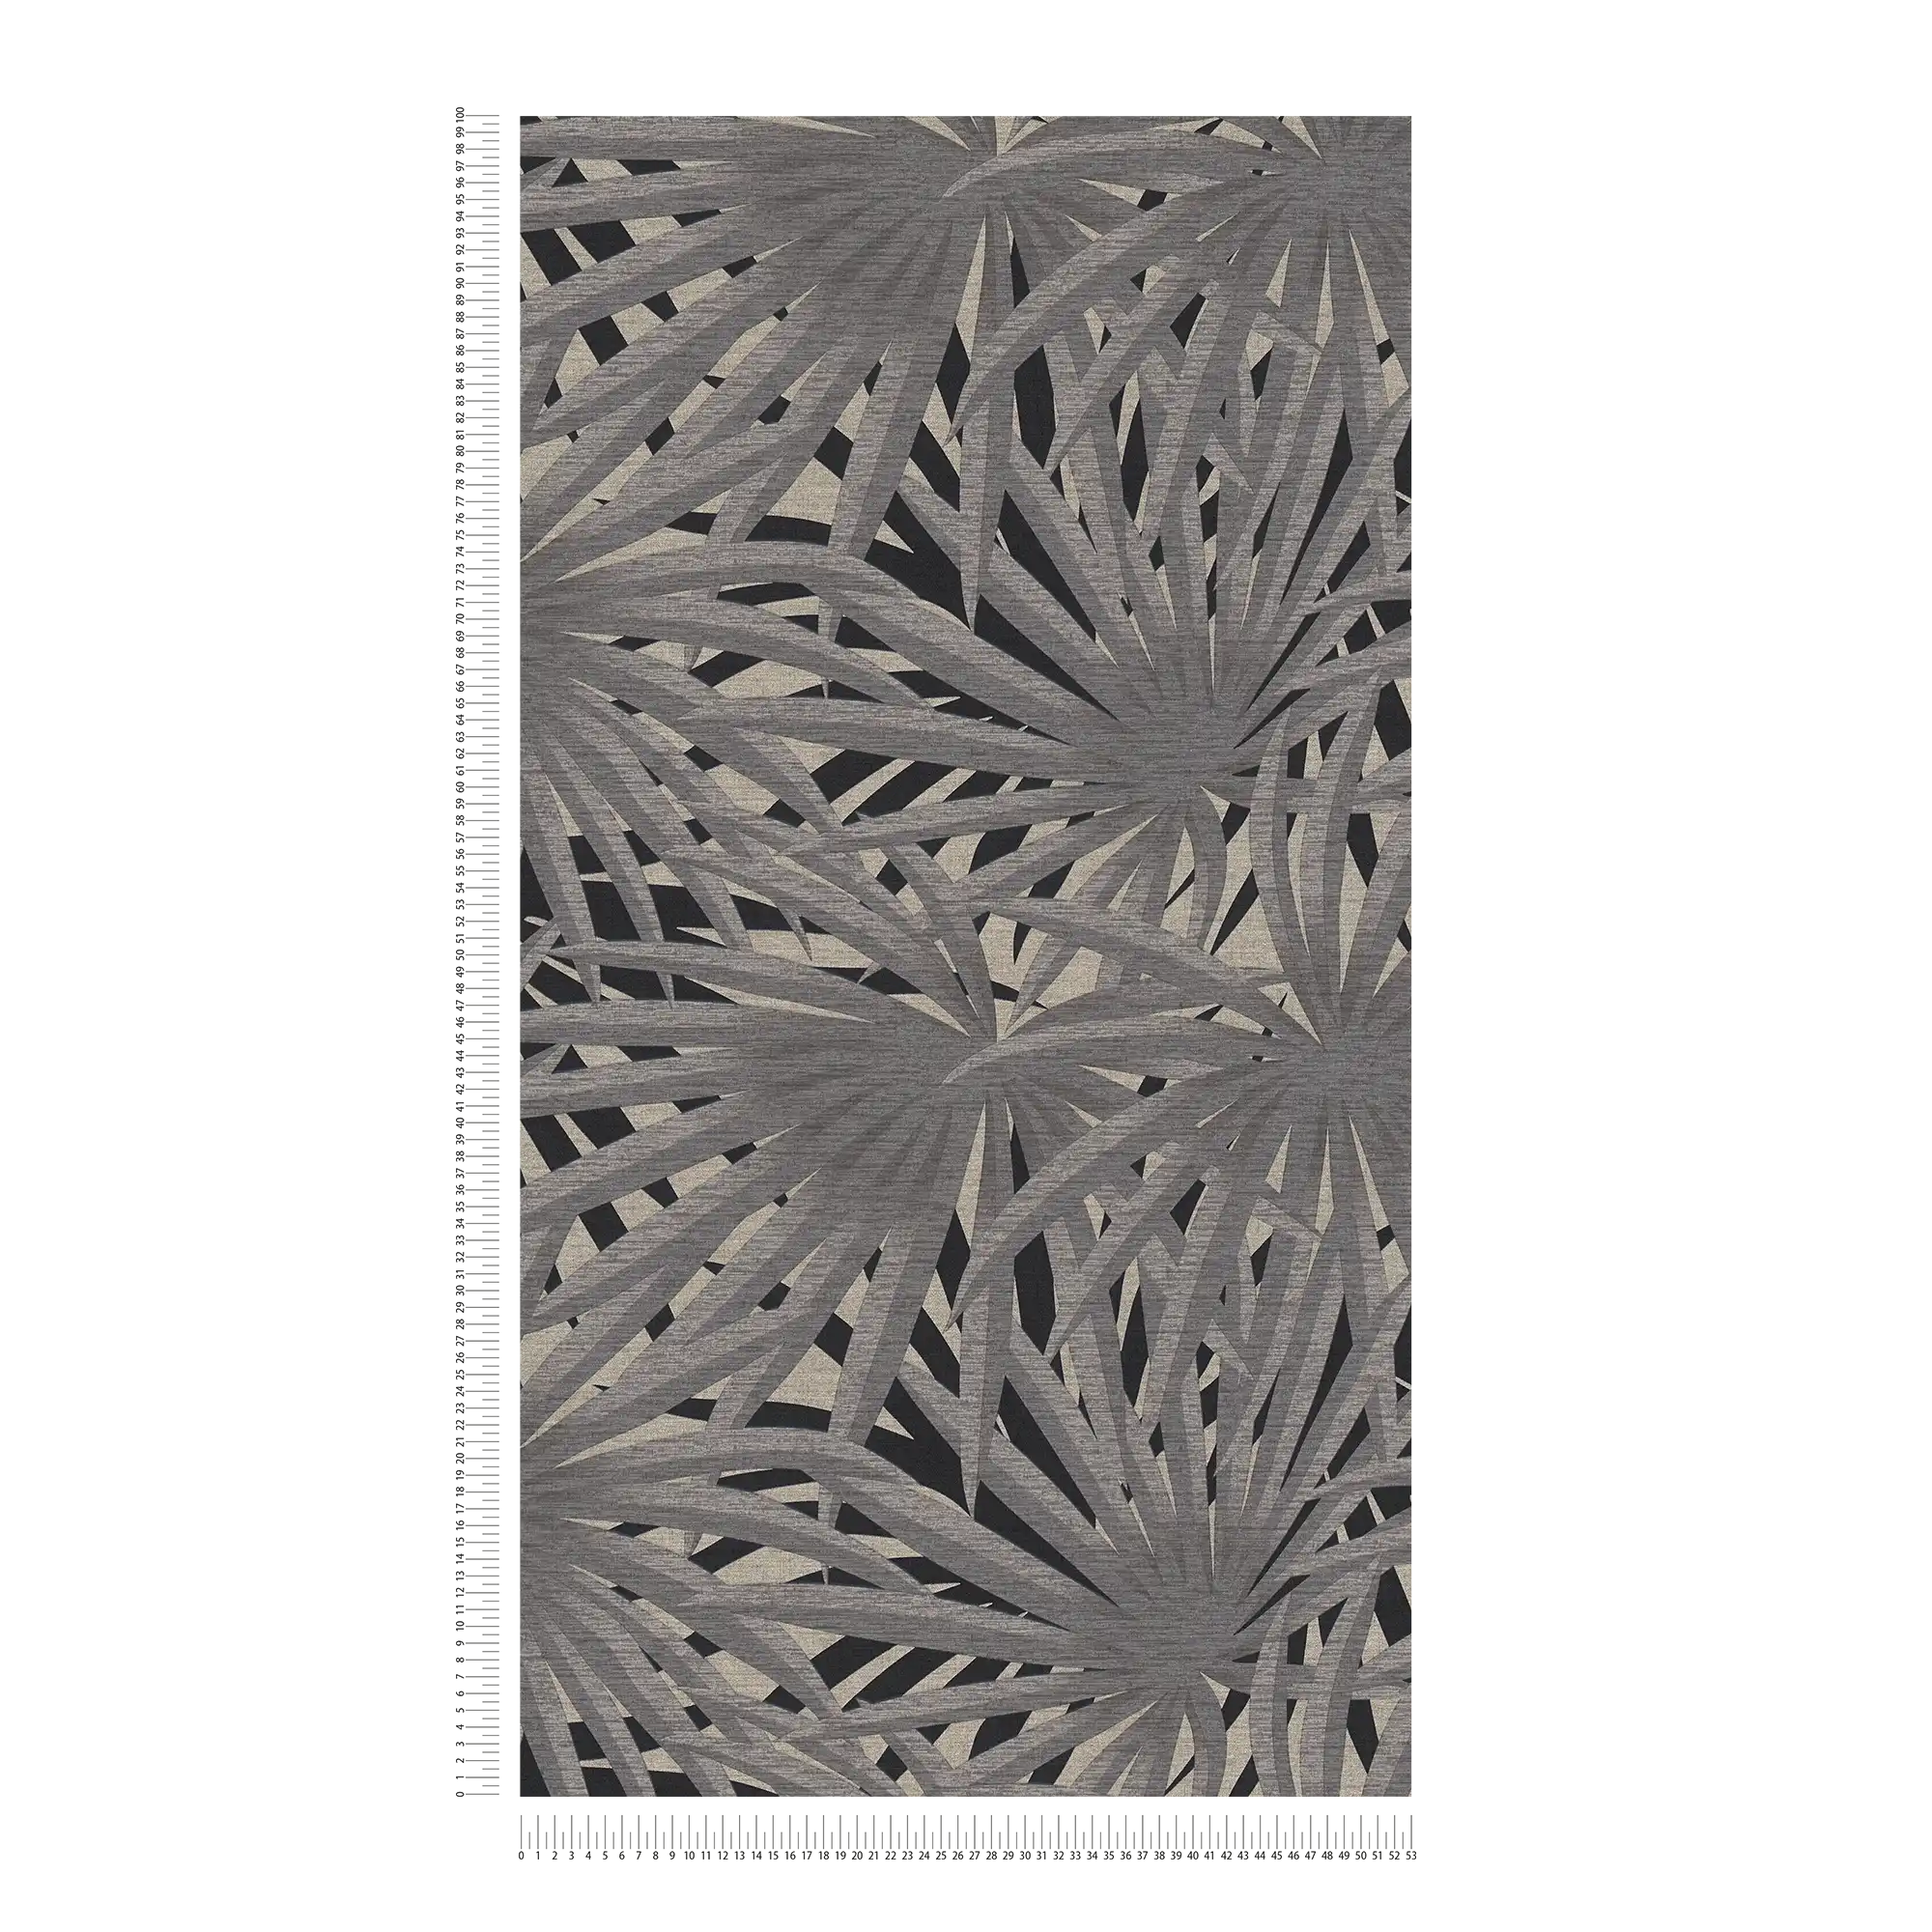             Papier peint intissé Jungle Design avec effet métallique - gris, métallique, noir
        